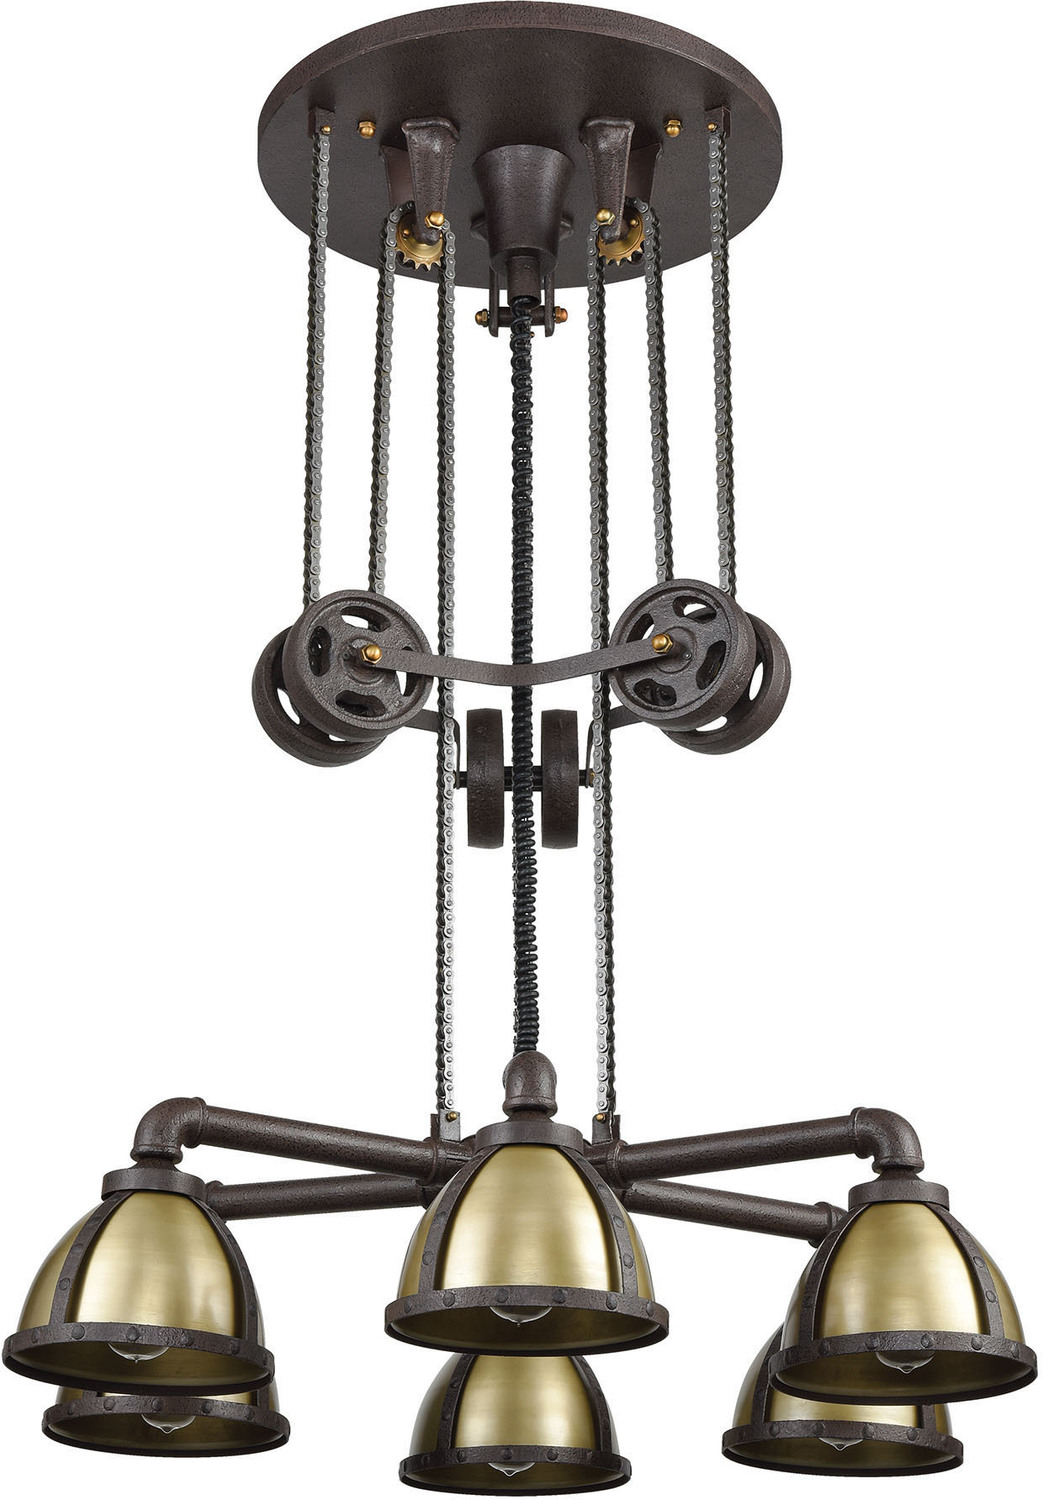 6 light chandelier ELK Lighting Chandelier Vintage Rust, Vintage Brass Transitional